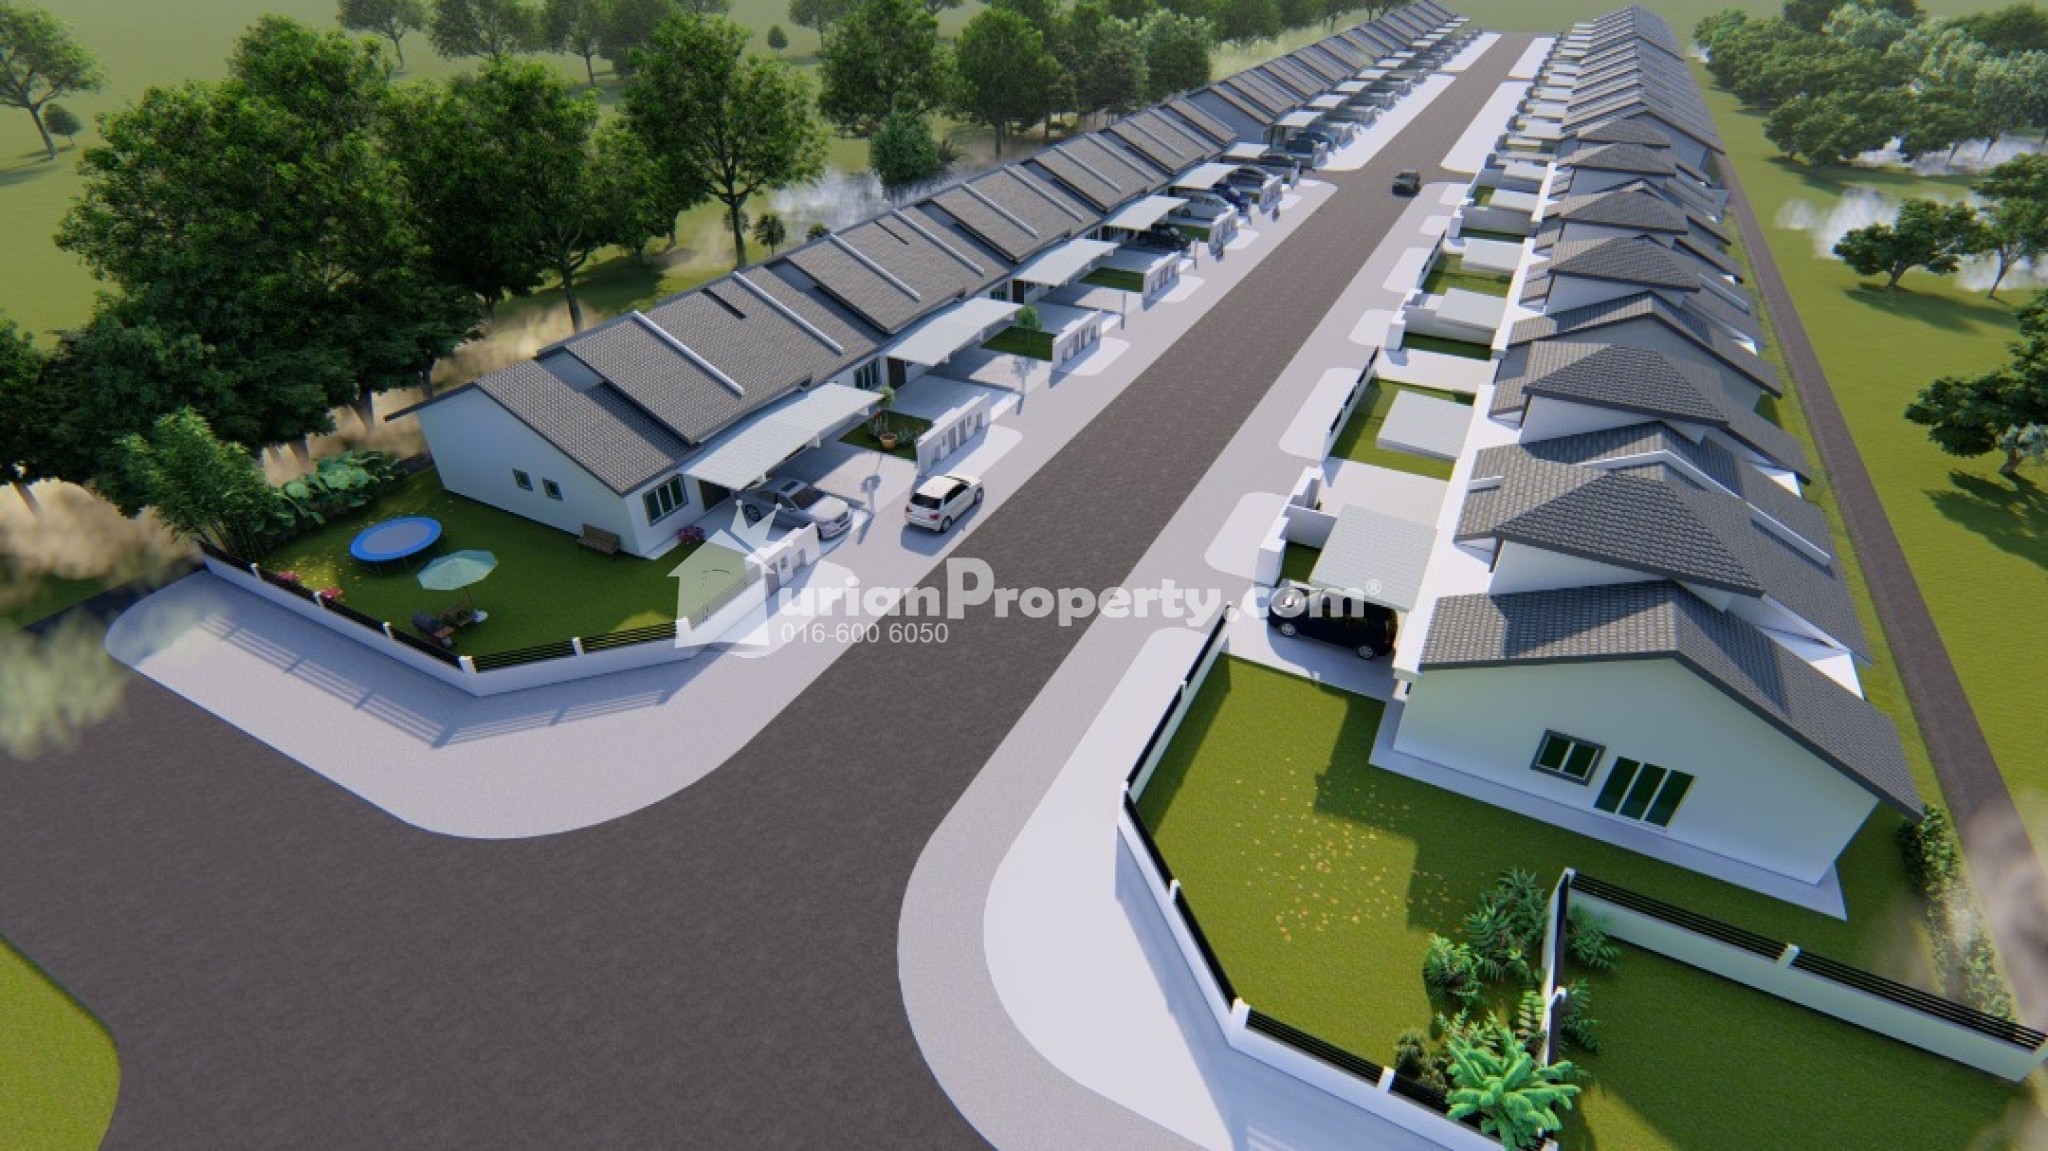 Terrace House New Launch at Taman Sementa Permai